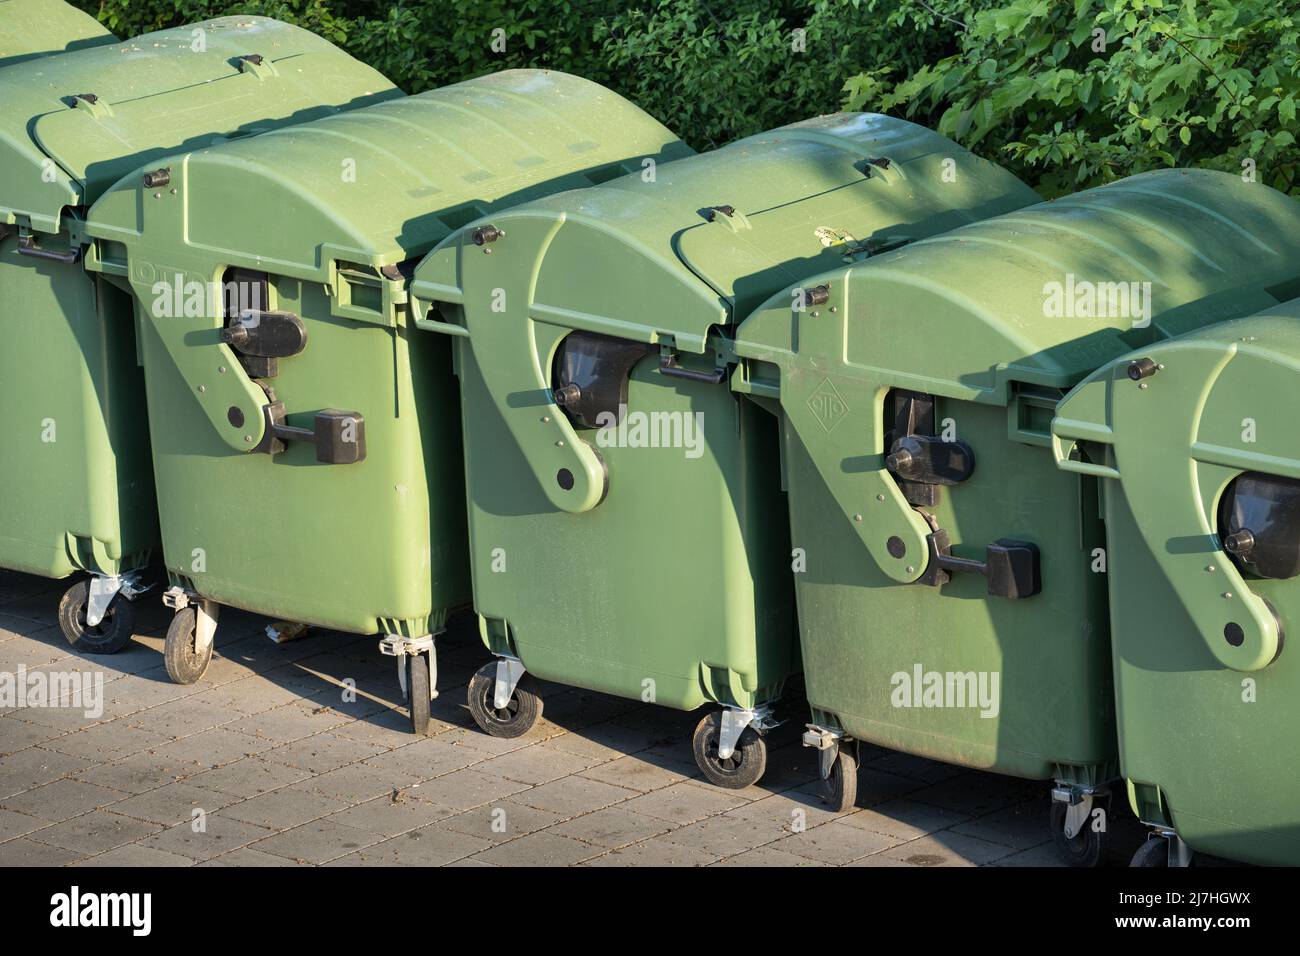 Los contenedores de basura en los que se recolectó la basura están listos para ser removados o vaciados. Foto de stock